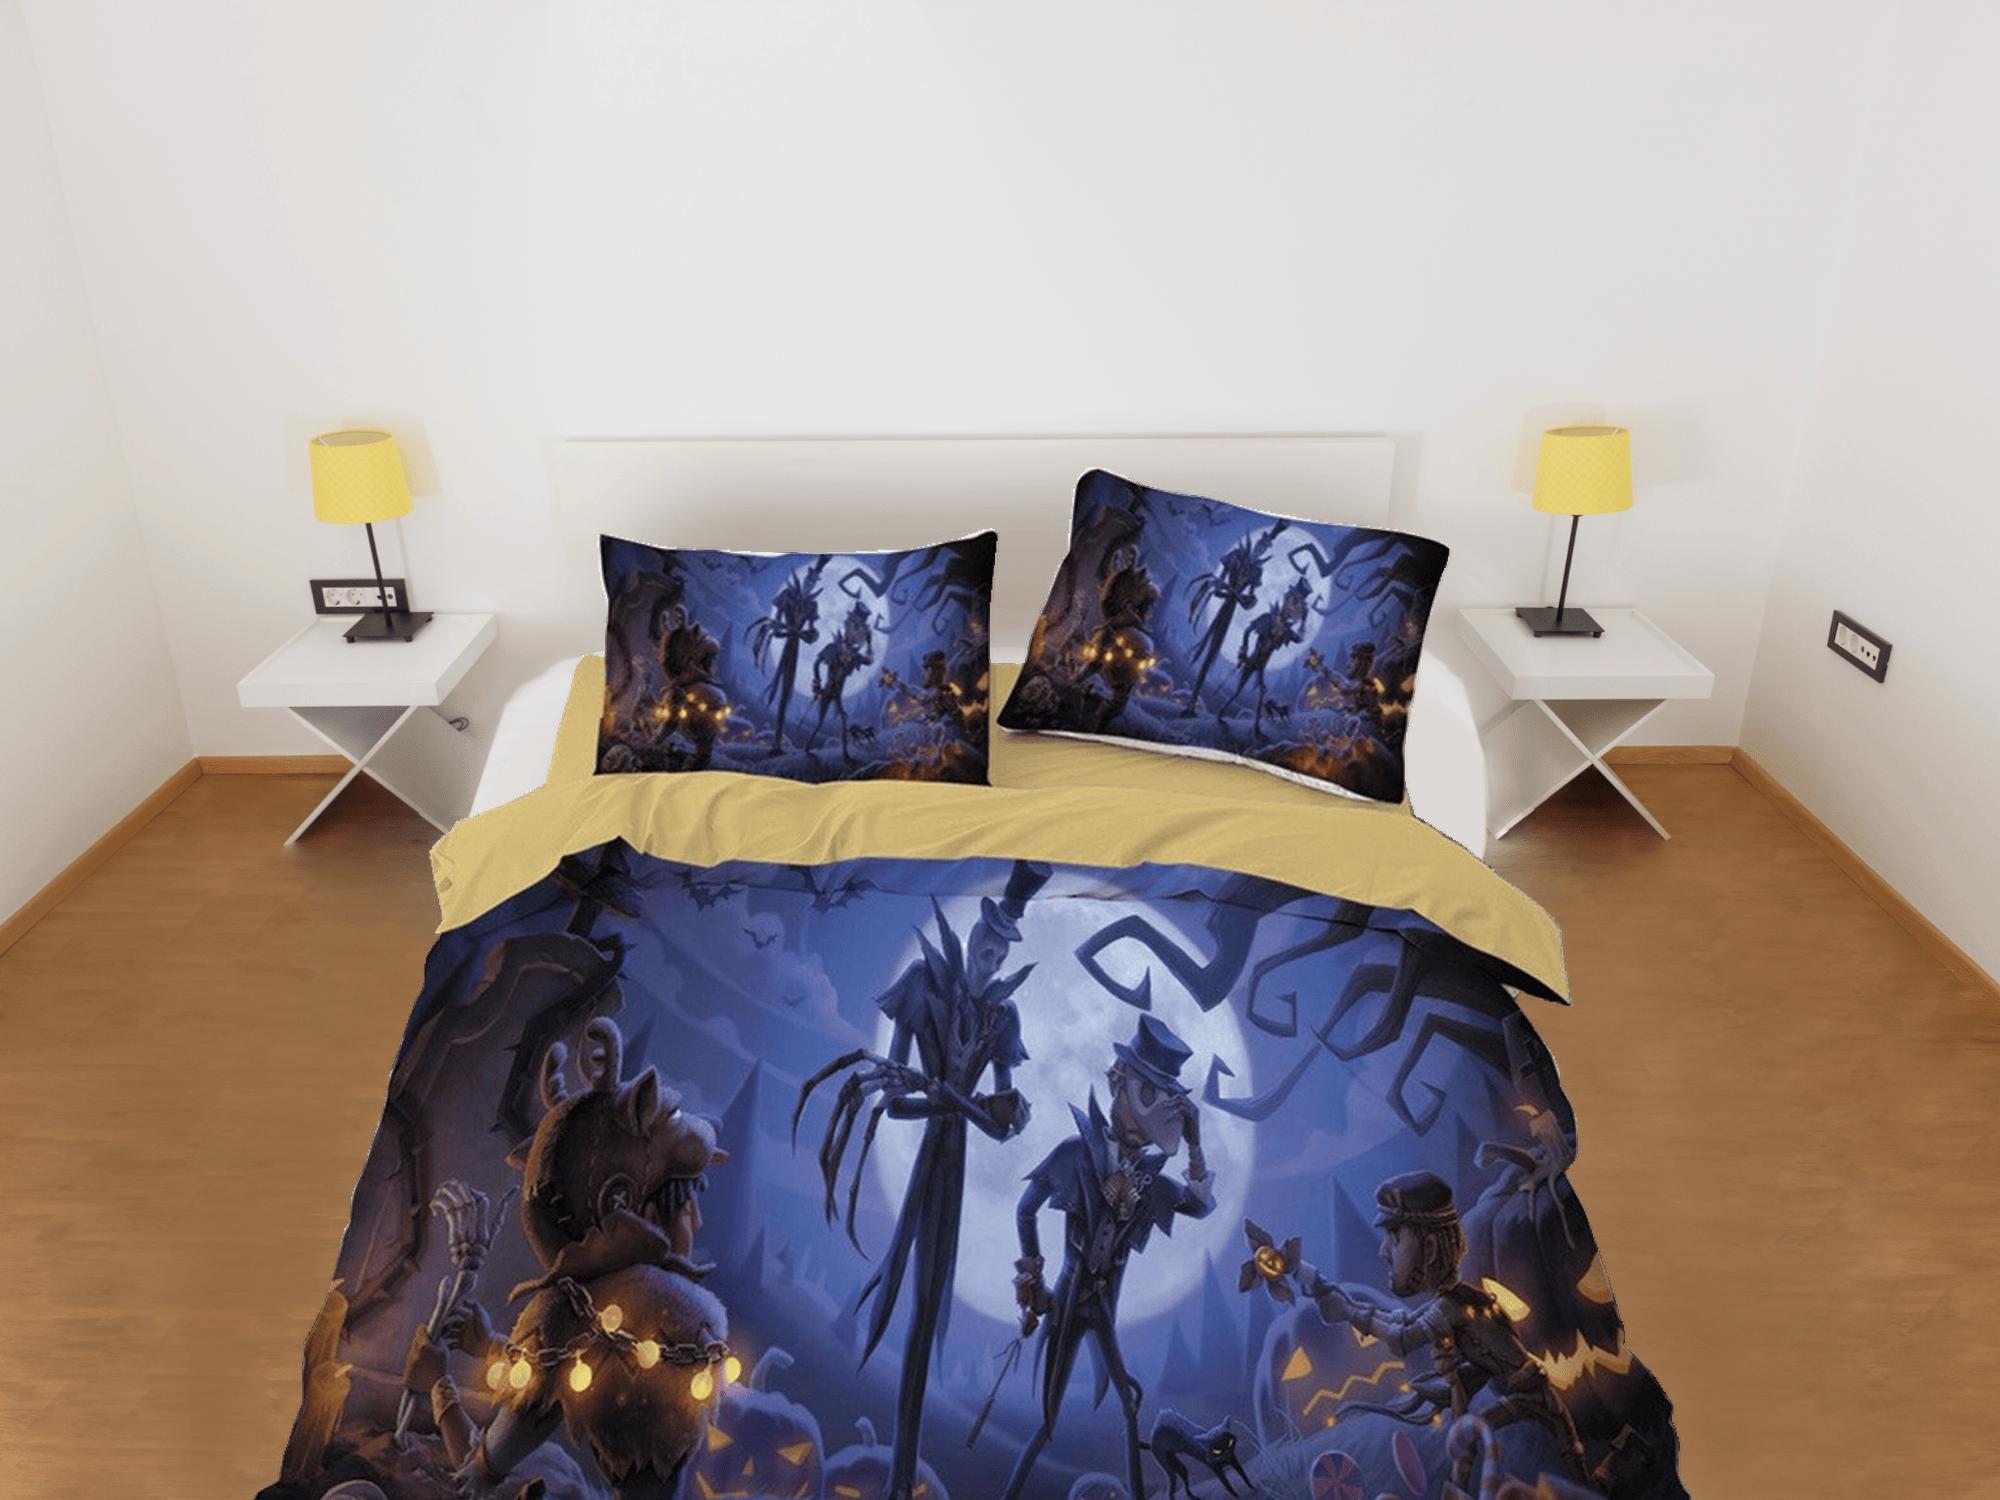 daintyduvet Skeletons pumpkin full moon halloween bedding & pillowcase, gothic duvet cover, dorm bedding, goth decor toddler bedding, halloween gift